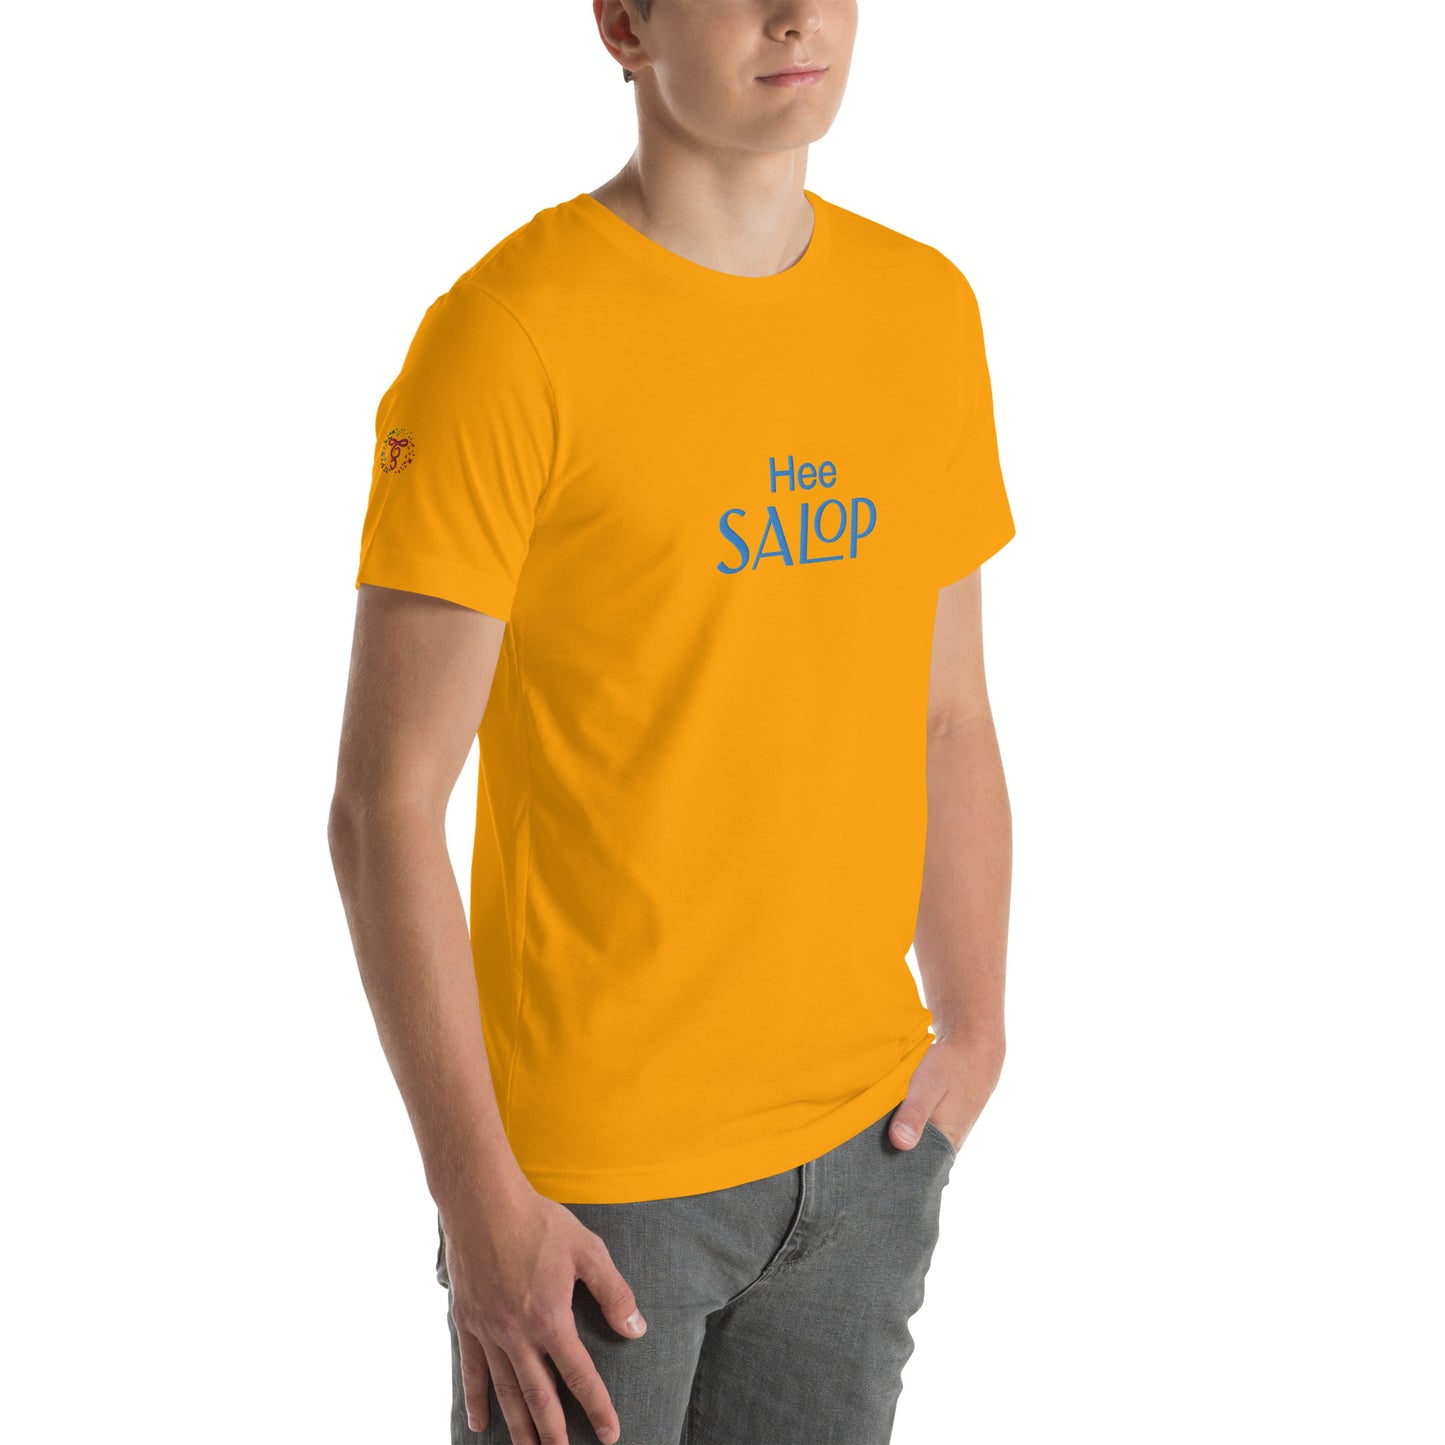 Hee Salop! Unisex t-shirt